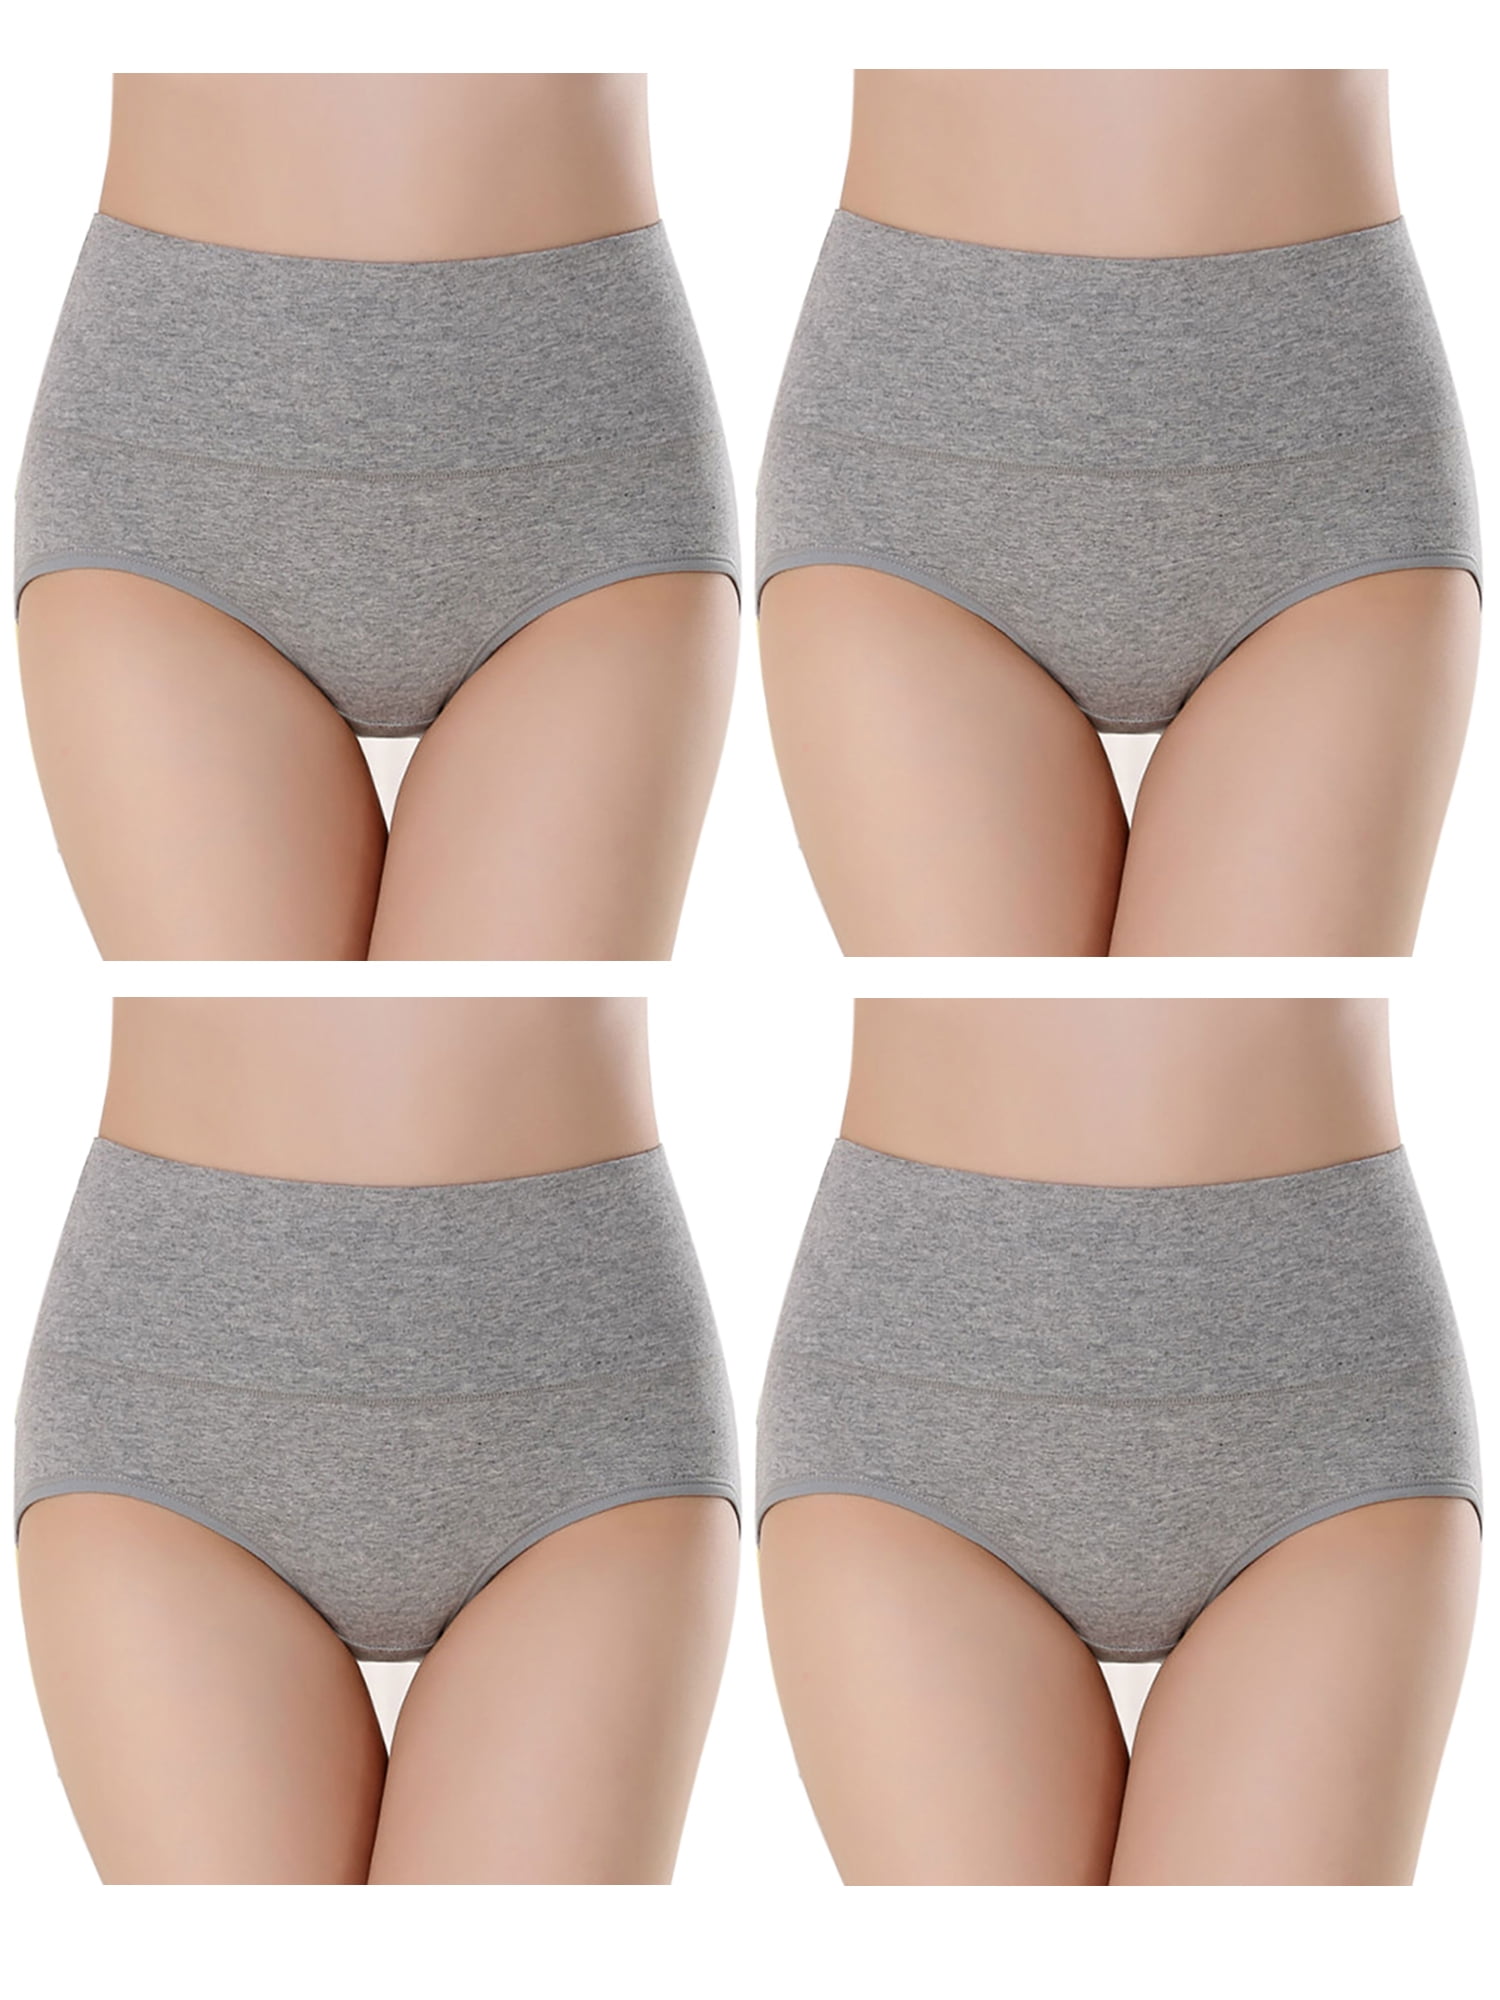 Womens' Comfort Cotton Briefs Firm Tummy Control Underwear Panty